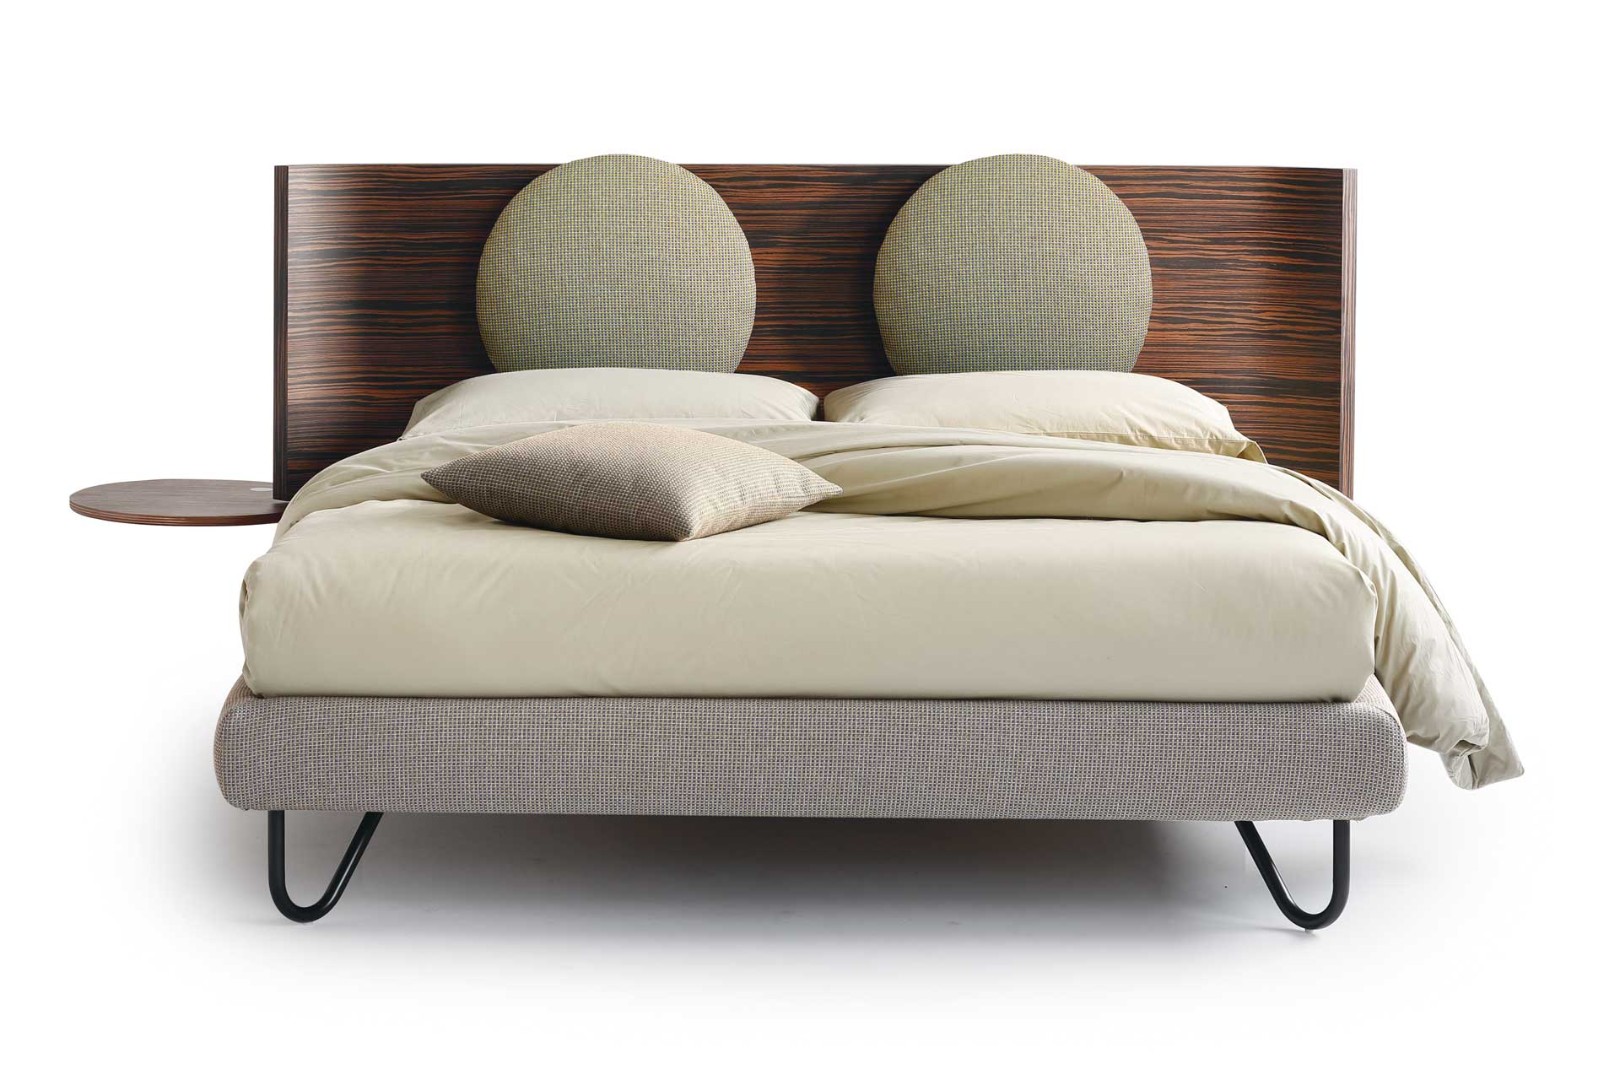 Кровать Hug 01 Round H17 — ₽, купить у официального дилера Nicolettihome